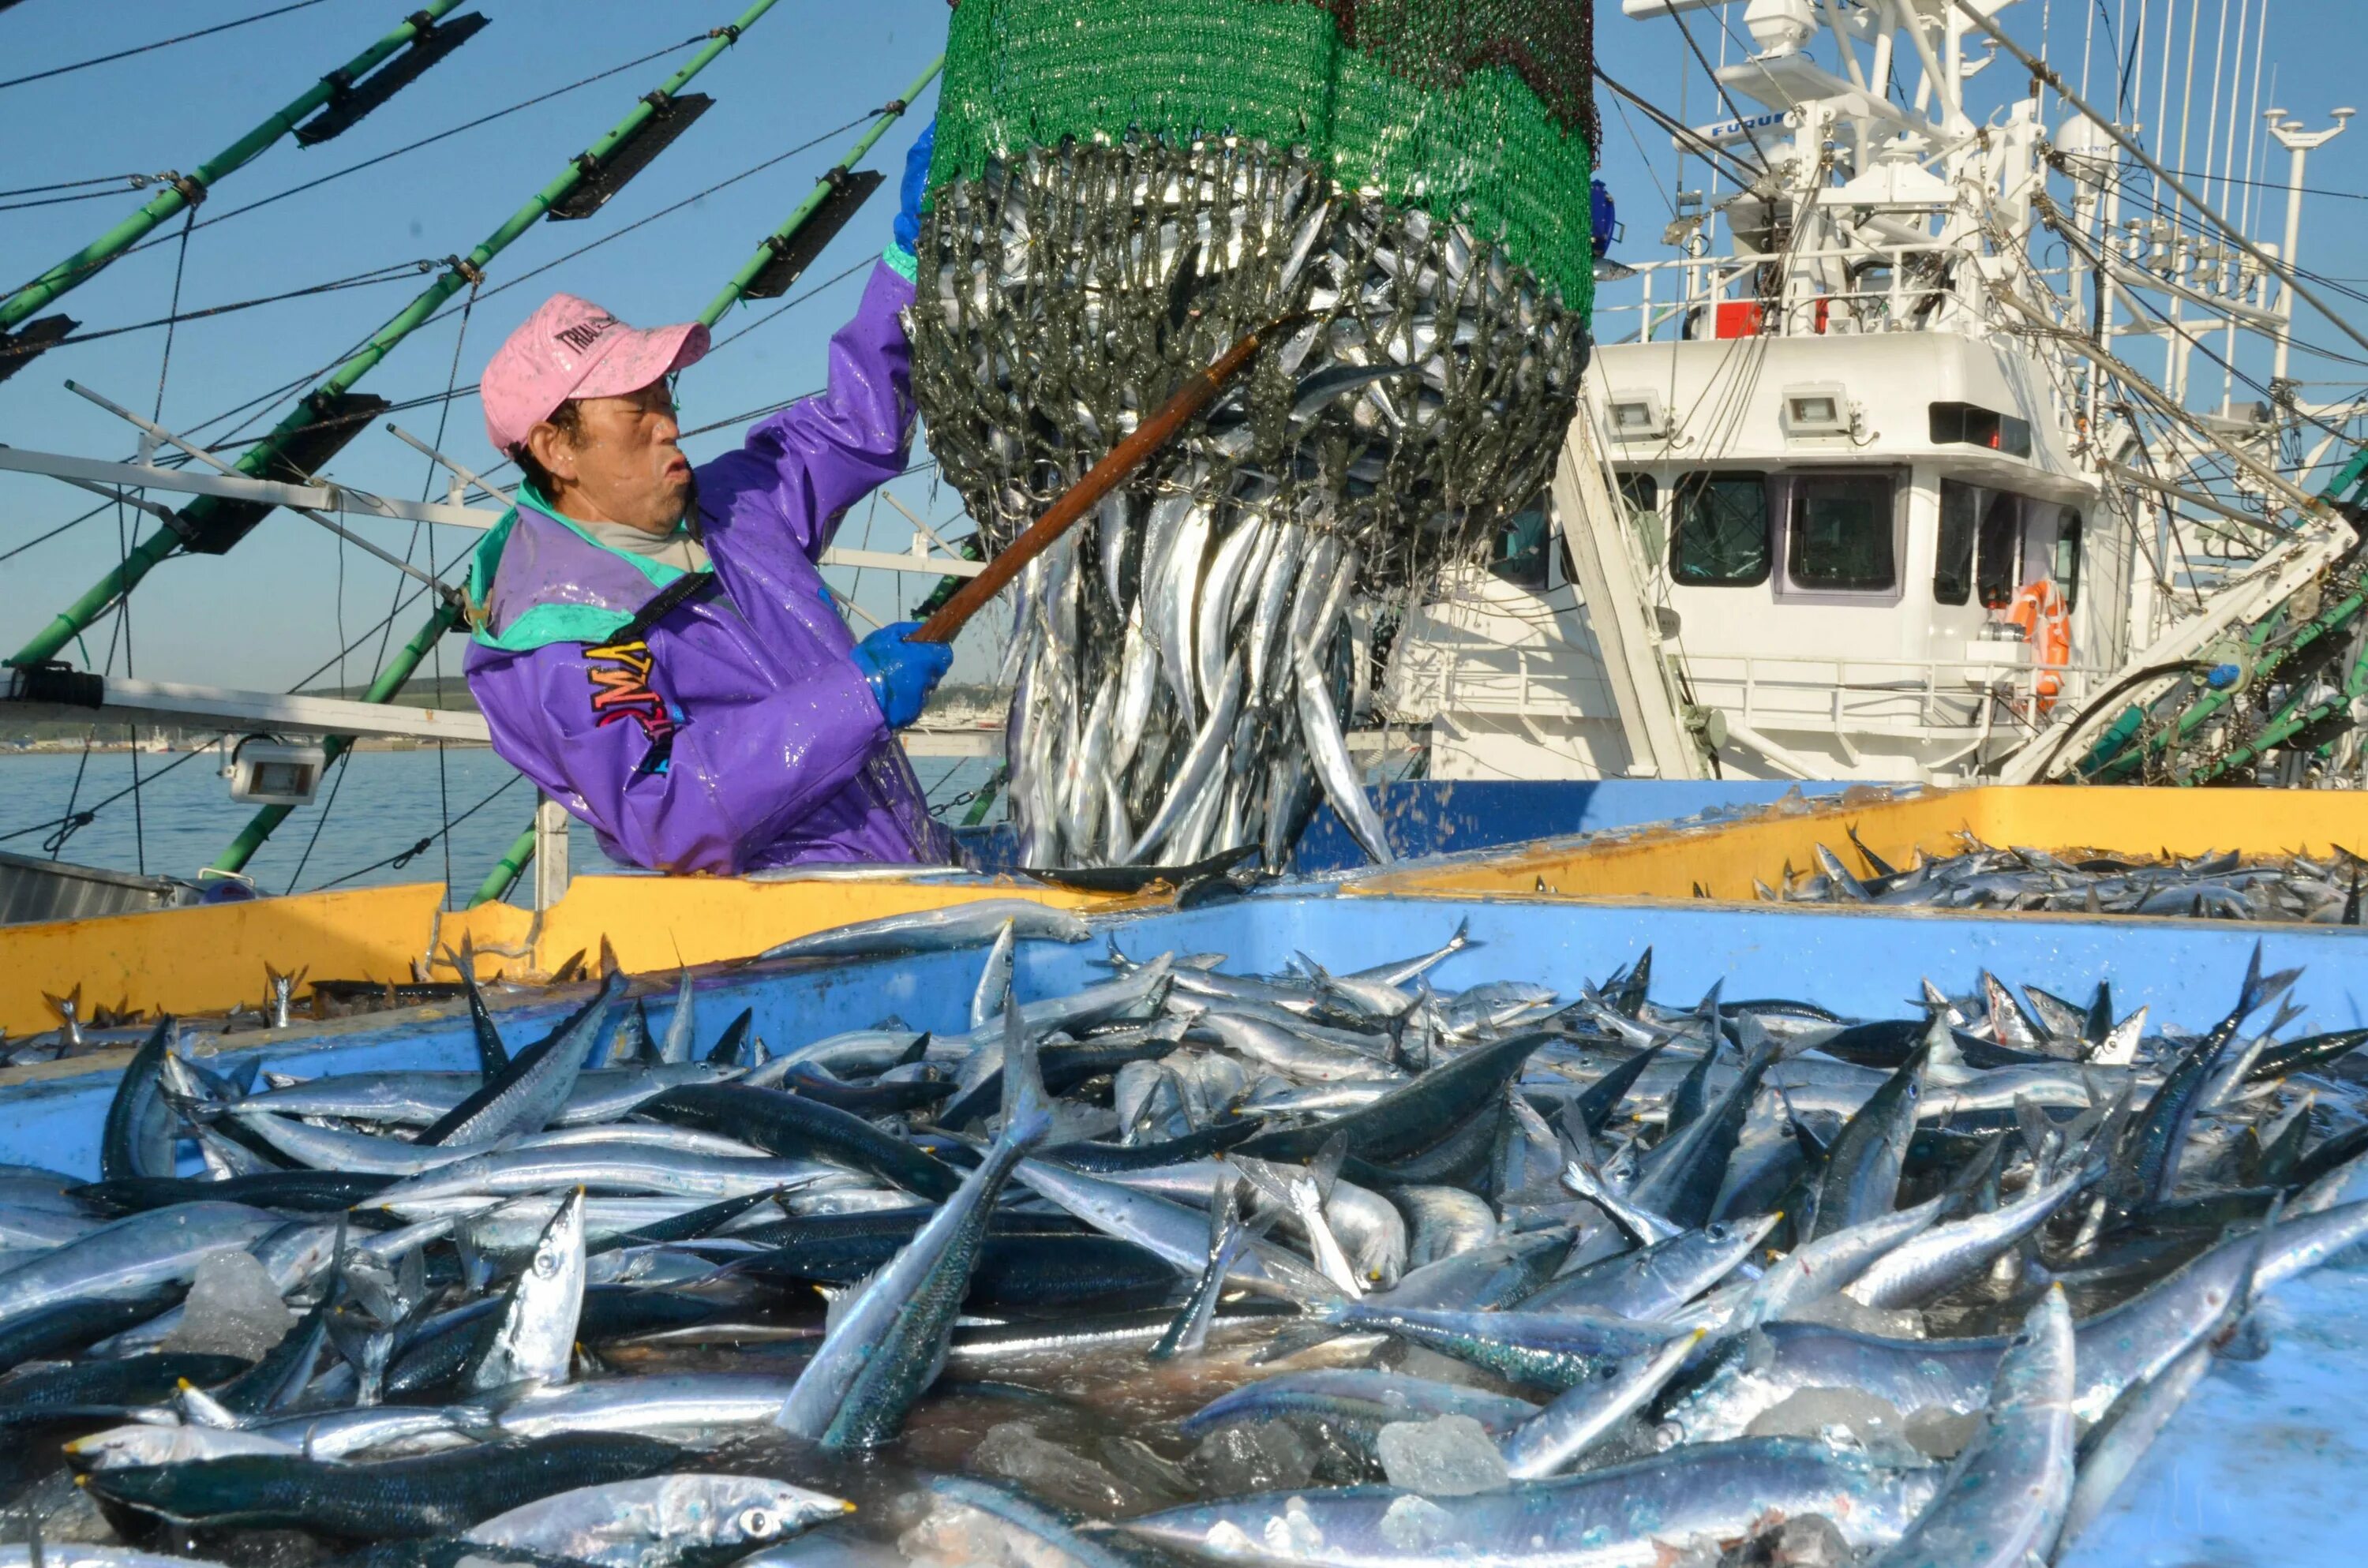 Промысел добыча. Сельское хозяйство Японии рыболовство. Рыболовство в Японии. Япония рыбный промысел. Добыча рыбы в Японии.